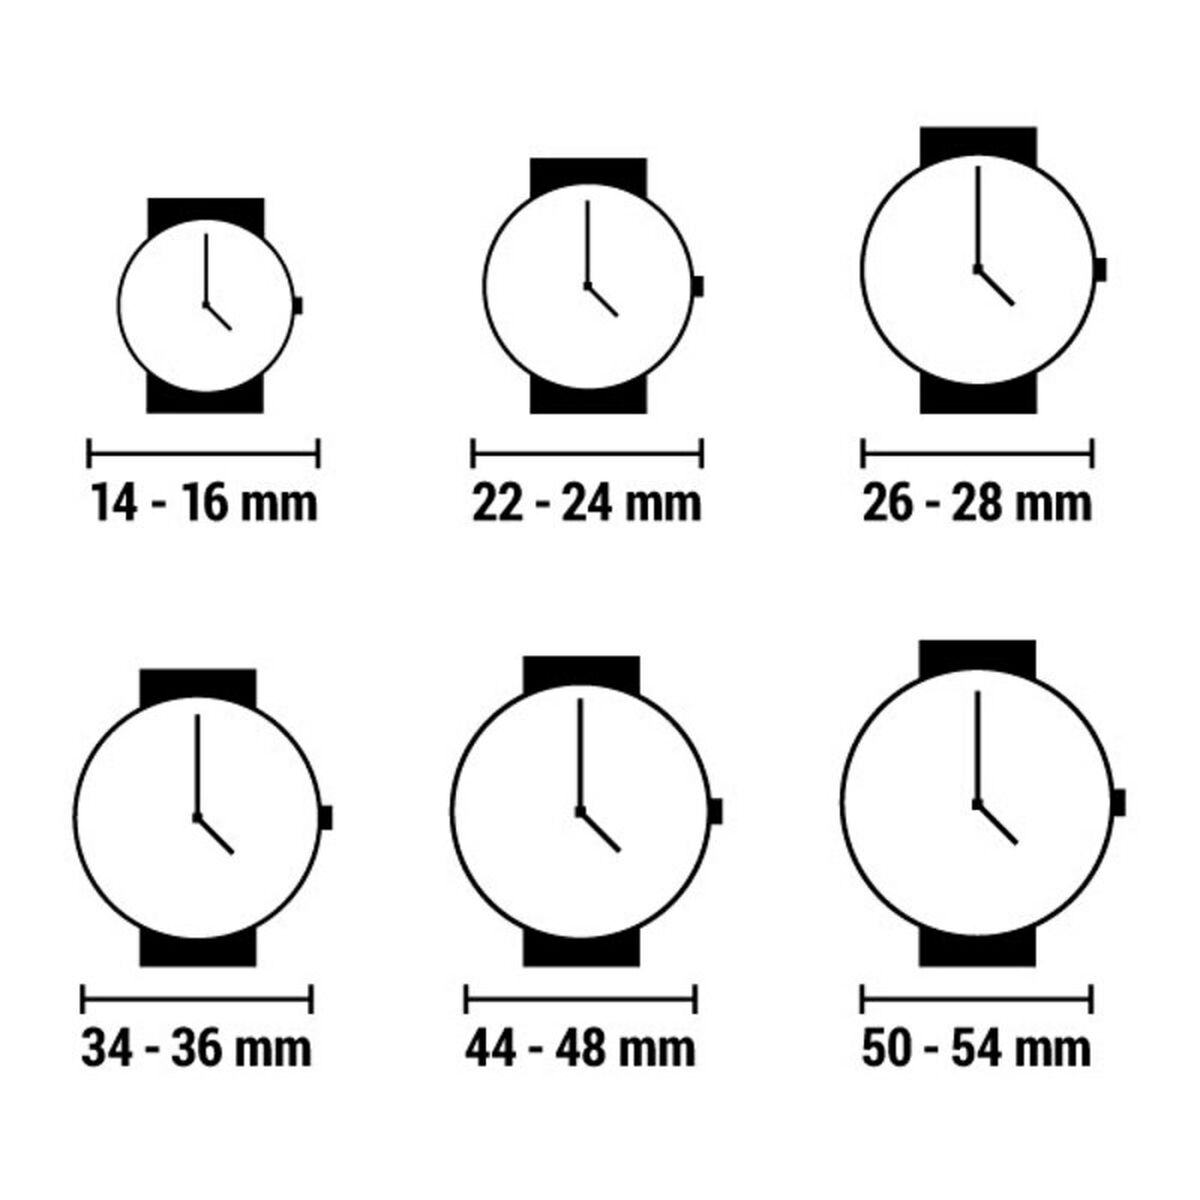 Horloge Dames Chronotech CT7122LS-08M (Ø 27 mm)